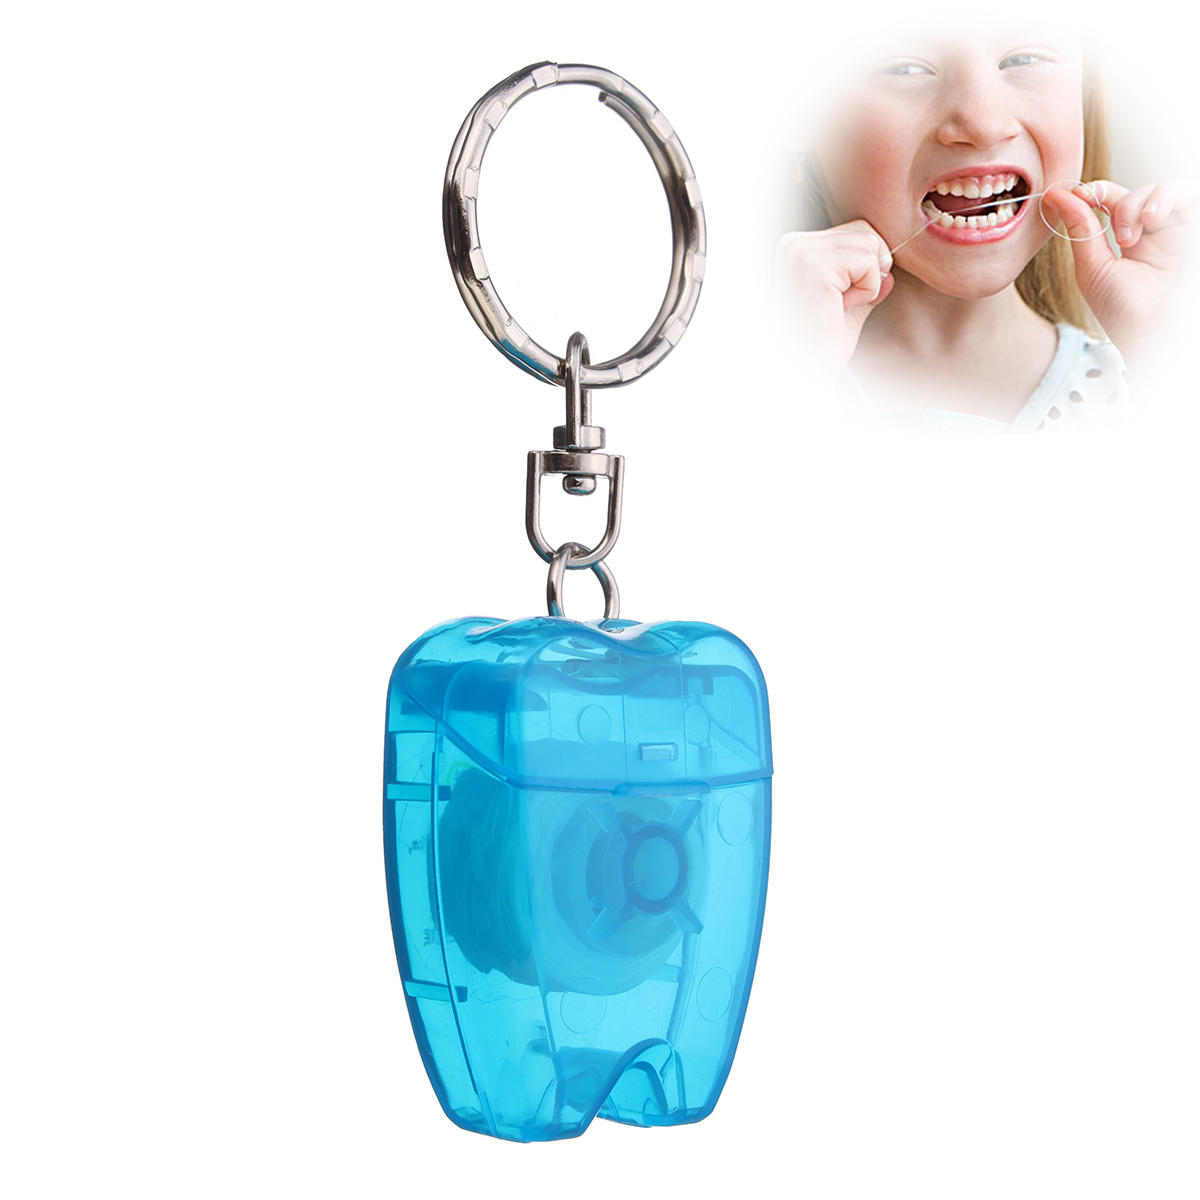 

Портативная цепочка для ключей 15 м мятного цвета Зубной Зубная нить Чистка зубов Уход за деснами Инструмент Брелок для